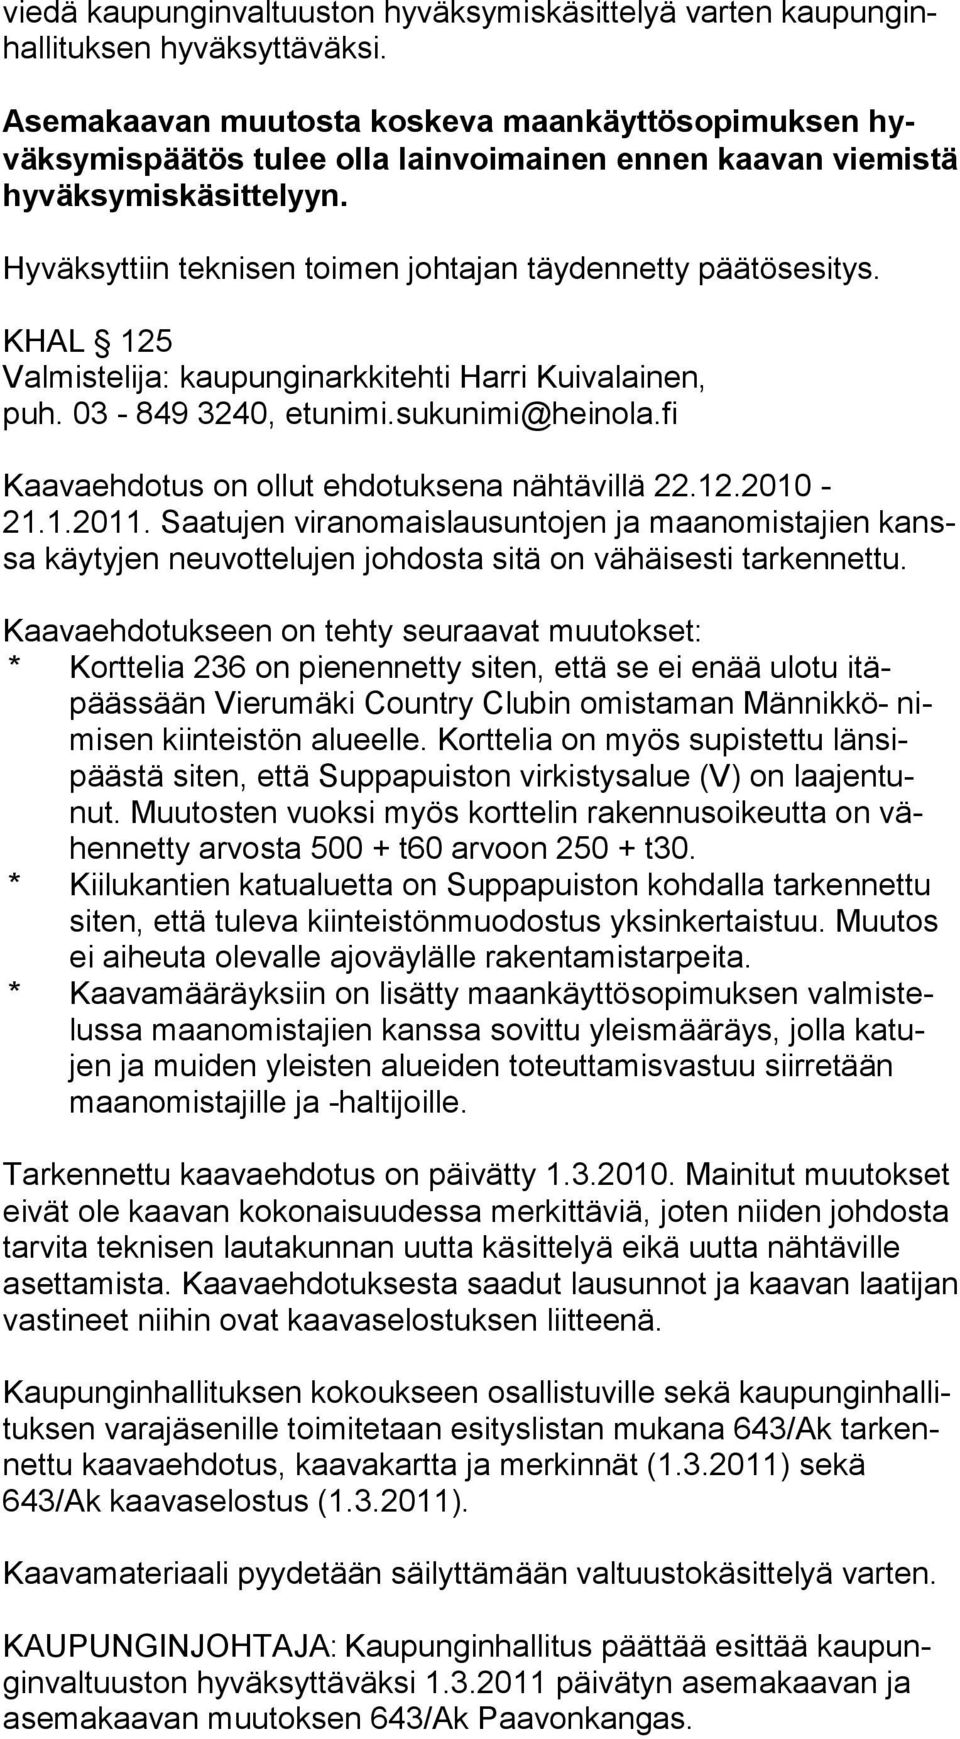 Hyväksyttiin teknisen toimen johtajan täydennetty päätösesitys. KHAL 125 Valmistelija: kaupunginarkkitehti Harri Kuivalainen, puh. 03-849 3240, etunimi.sukunimi@heinola.